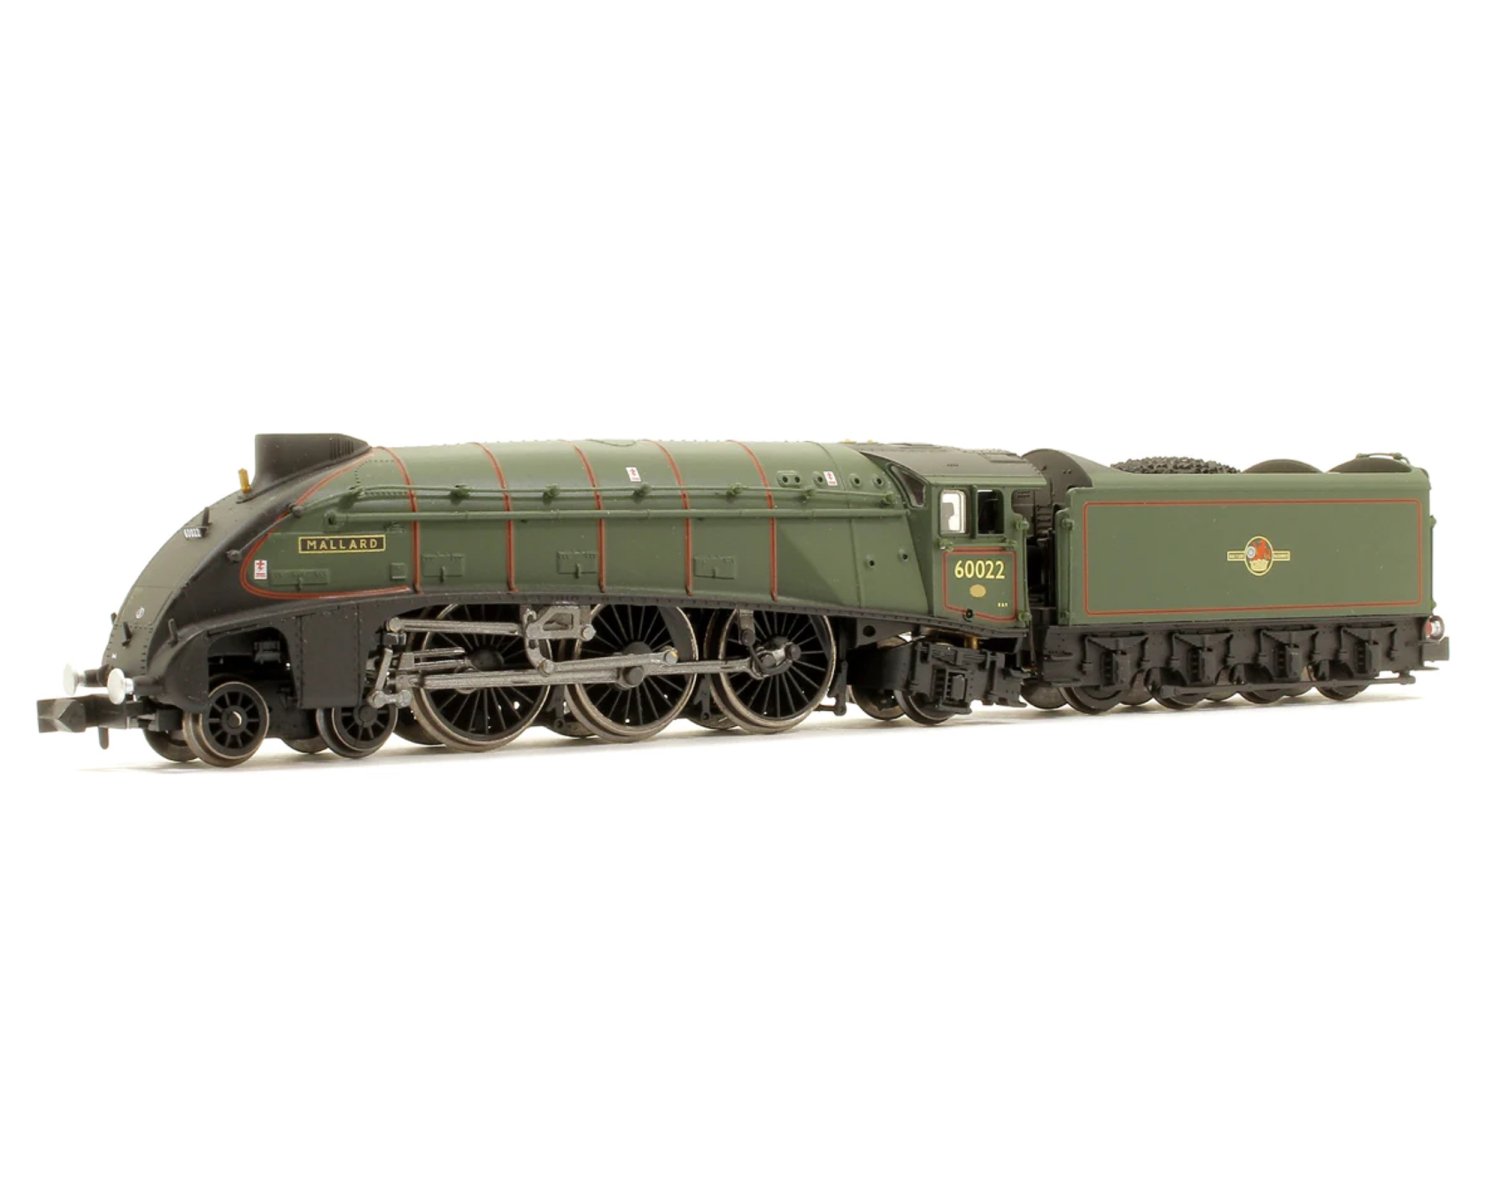 ダポール(Dapol) N A4 Steam Locomotive number 60022 Mallard 2S-008 